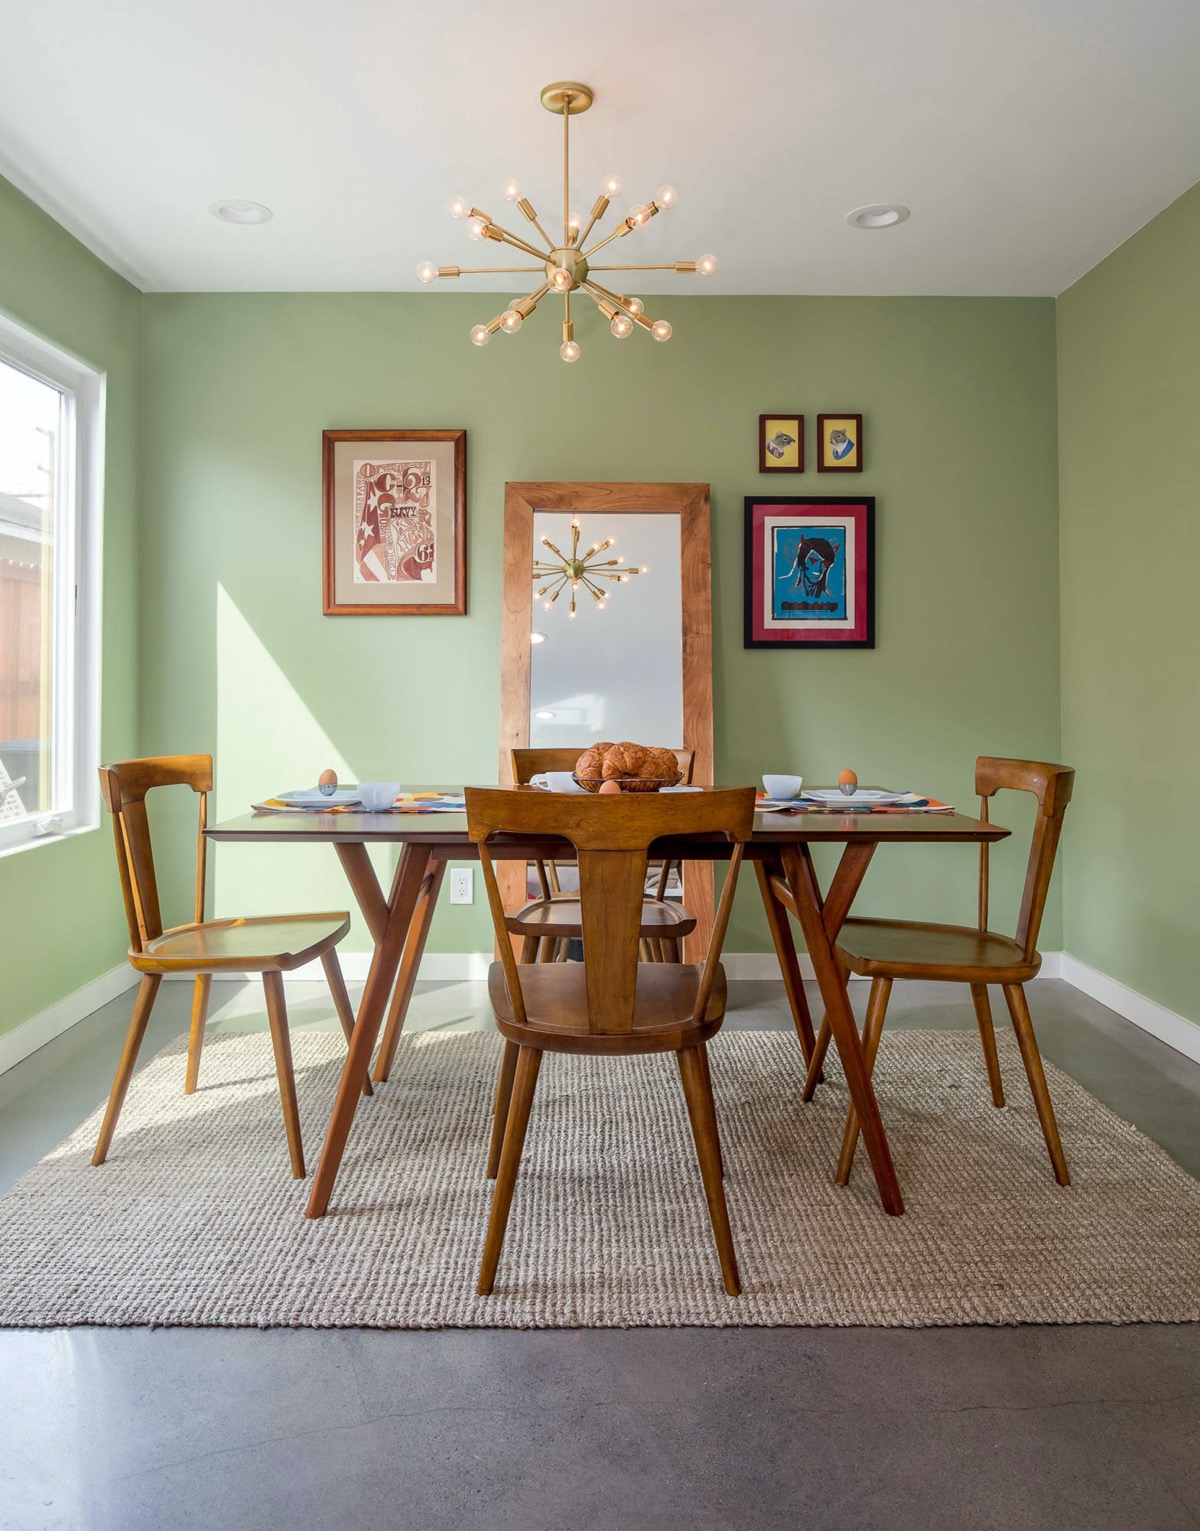 Phòng ăn ấm áp tuyệt đối với sự kết hợp của màu xanh lá cây và nội thất gỗ, tấm gương lớn cho hiệu ứng phản chiếu ánh sáng cho căn phòng càng thêm thoáng đãng.